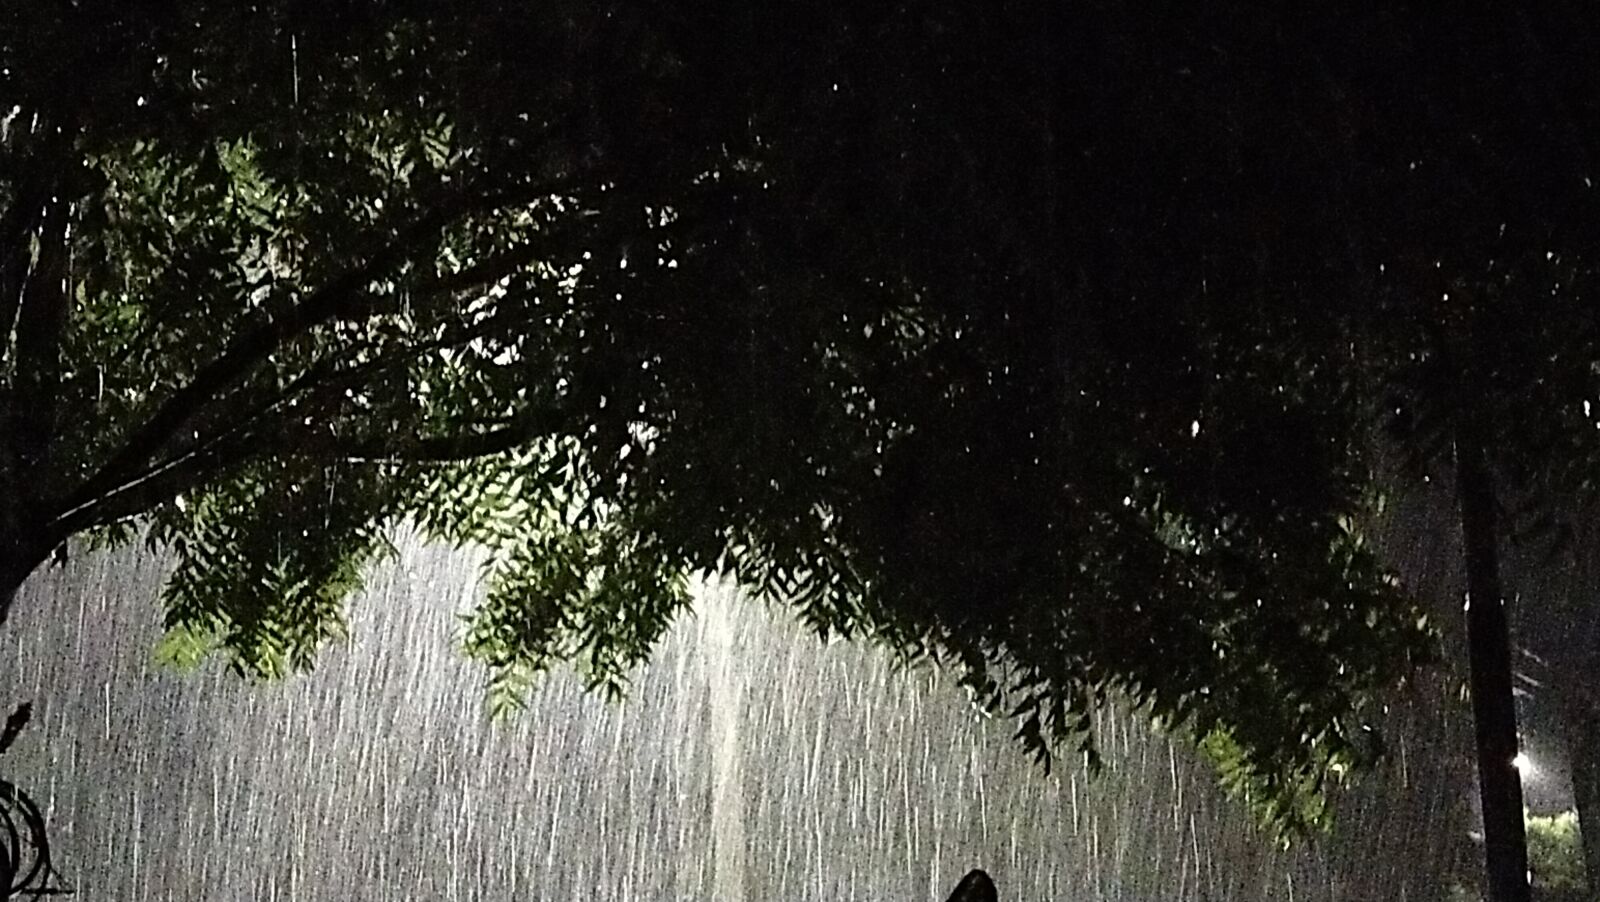 vivo 1920 sample photo. Rain, rainy, night photography